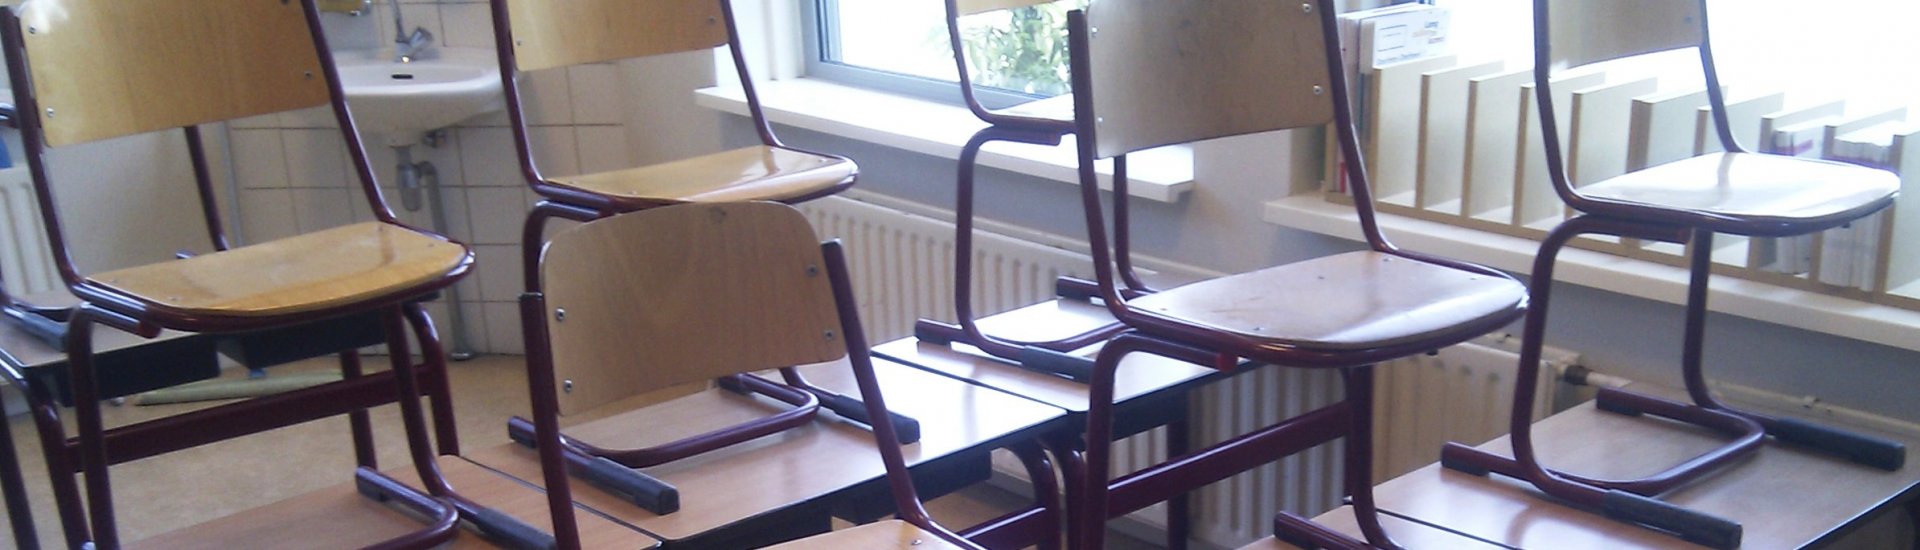 Een leeg klaslokaal. (Foto: Onderwijsgek | CC/Wikimedia Commons)